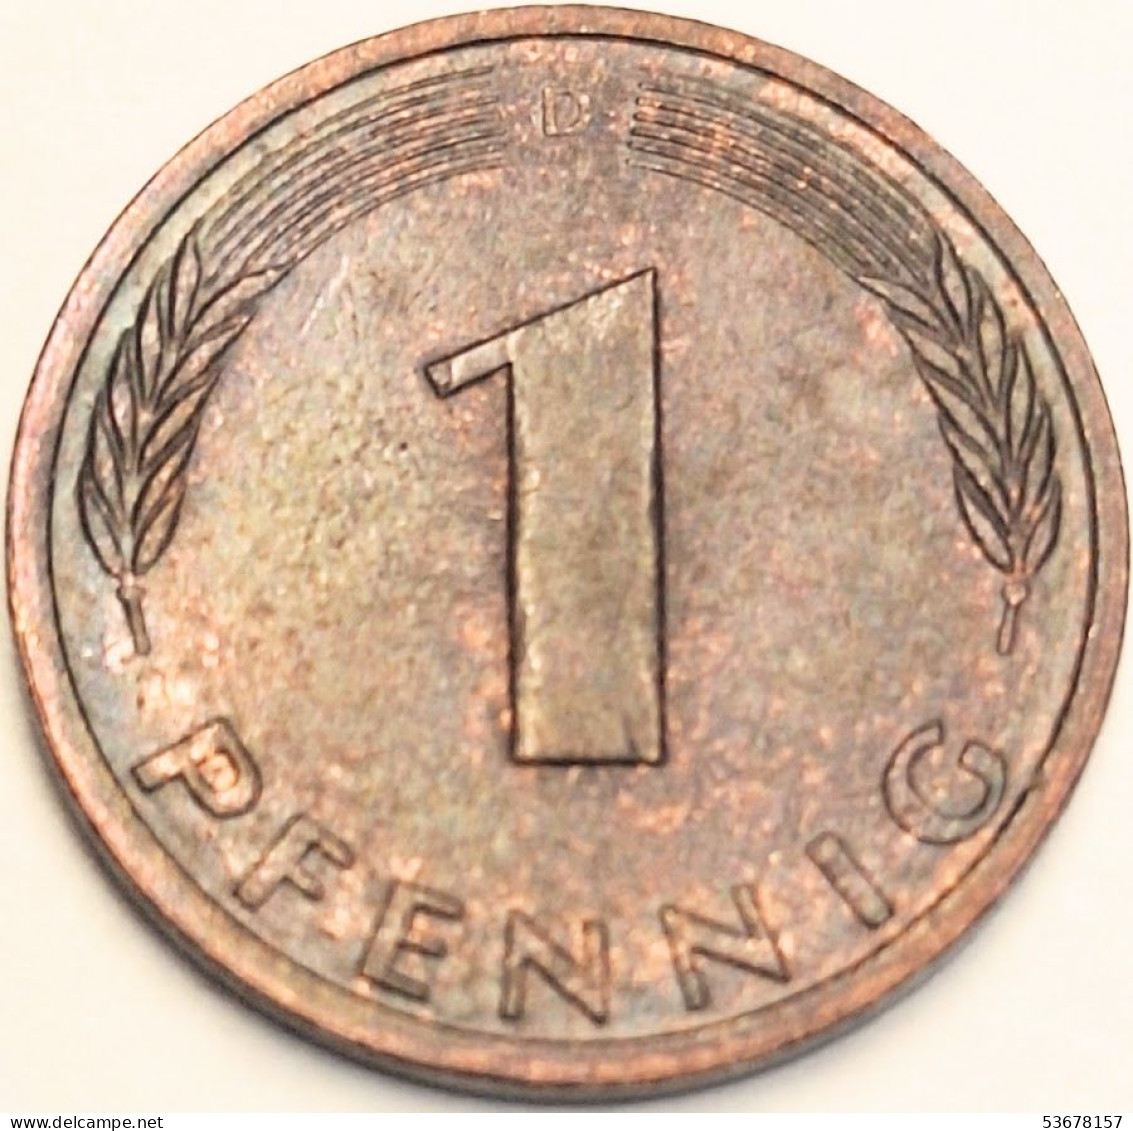 Germany Federal Republic - Pfennig 1982 D, KM# 105 (#4486) - 1 Pfennig